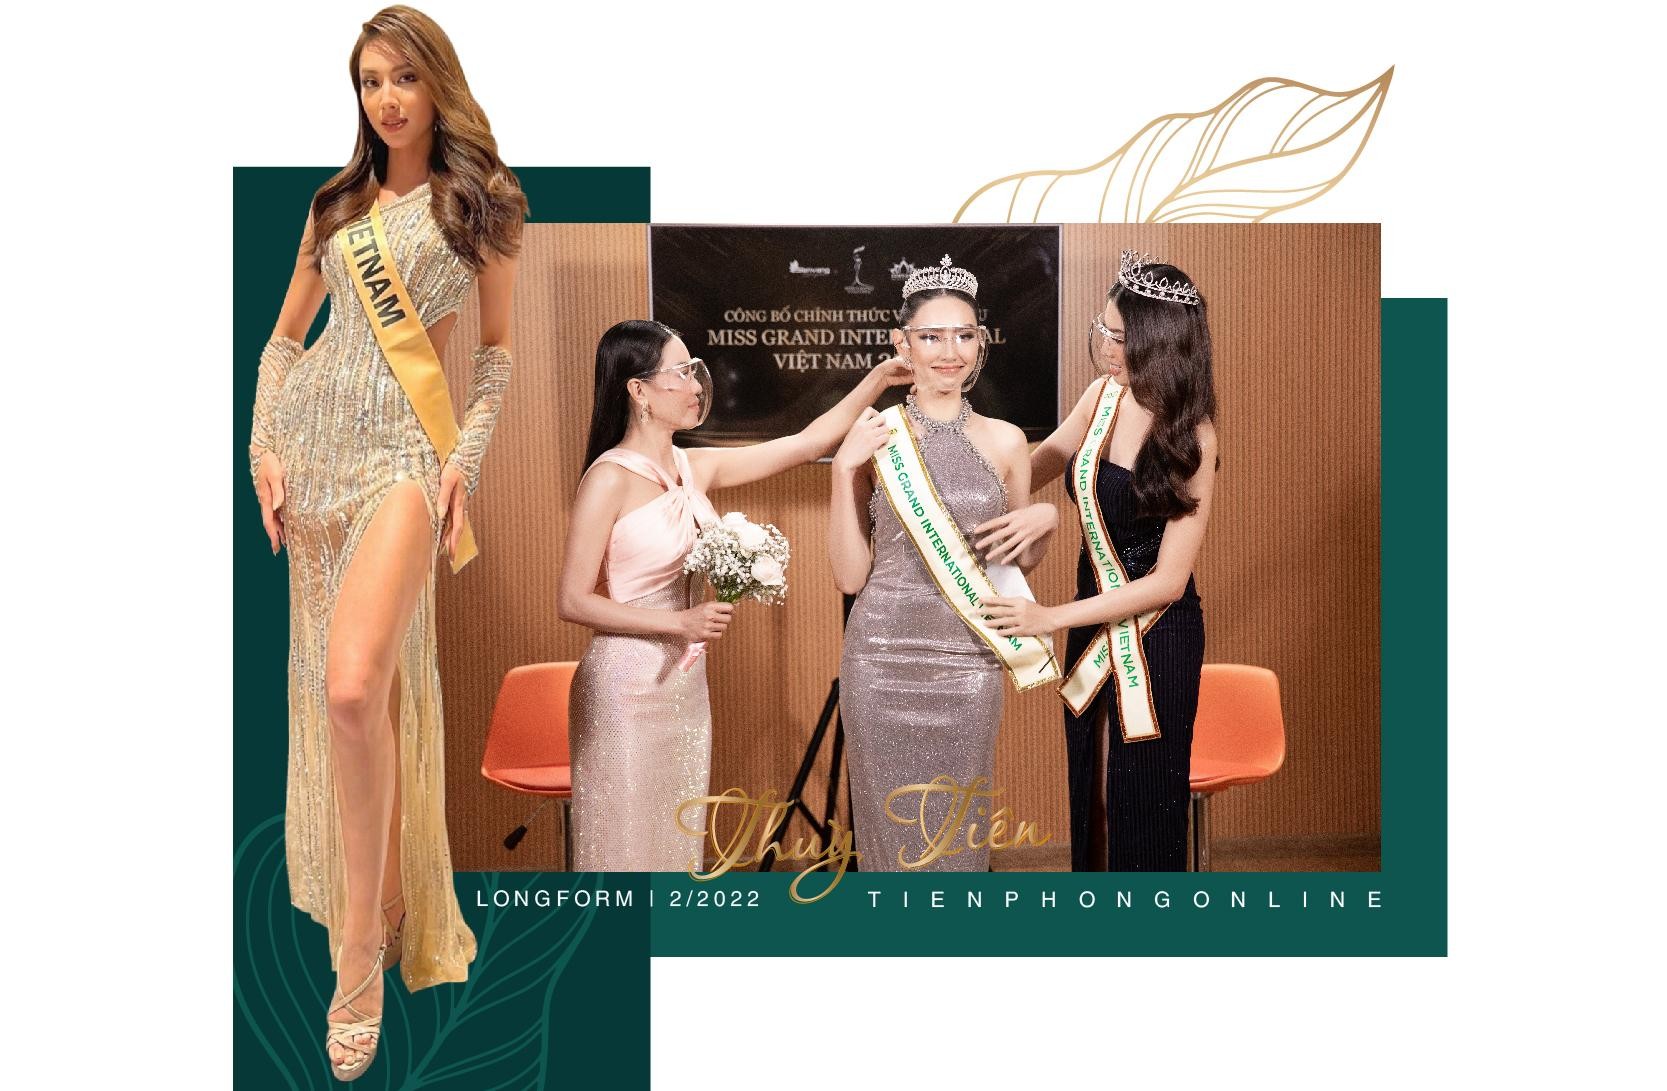 Dấu ấn rực rỡ của Hoa hậu Hòa bình Quốc tế 2021 Nguyễn Thúc